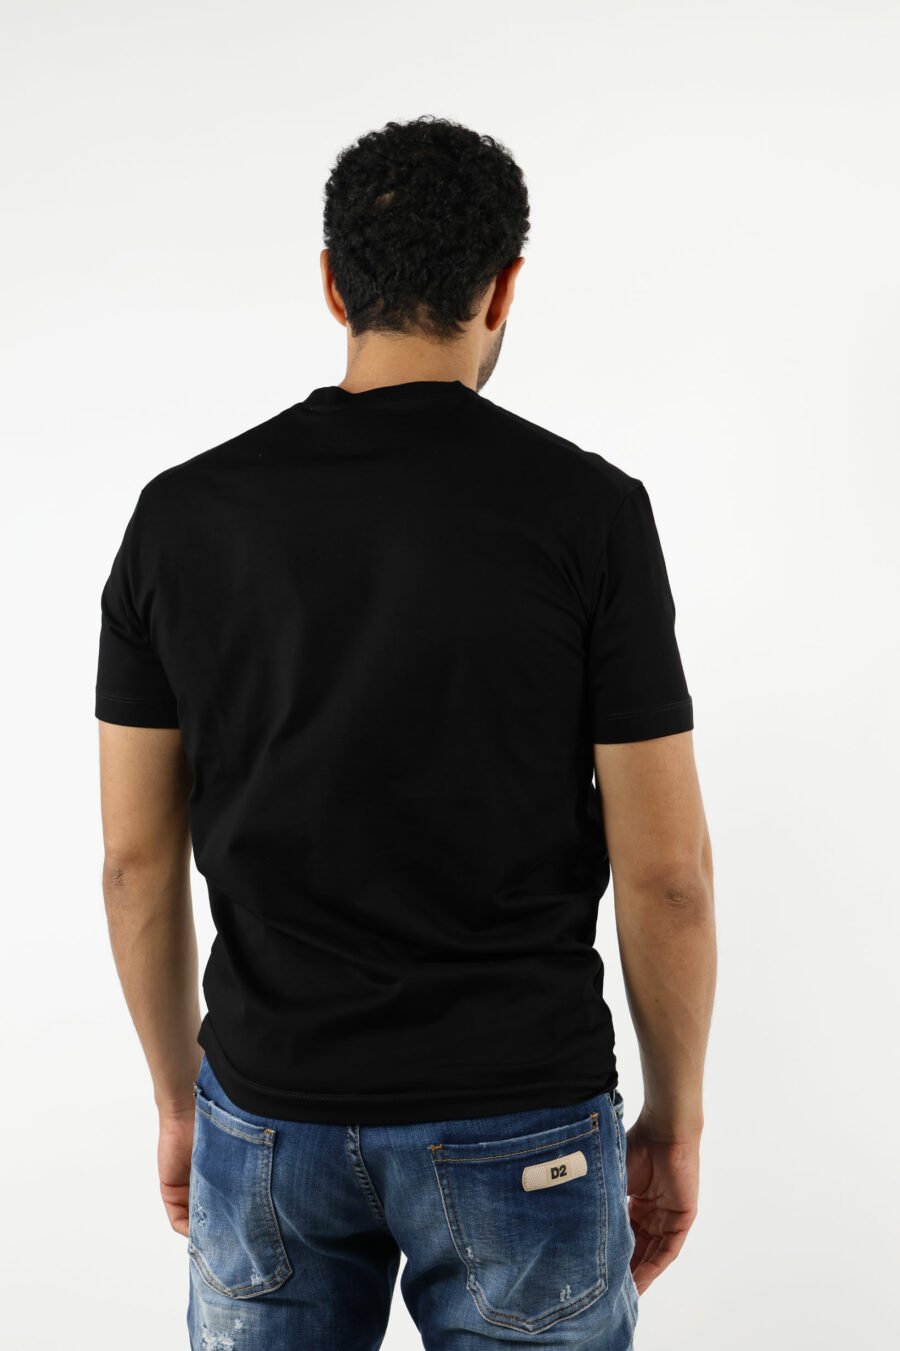 Camiseta negra con maxilogo multicolor retro - 111203